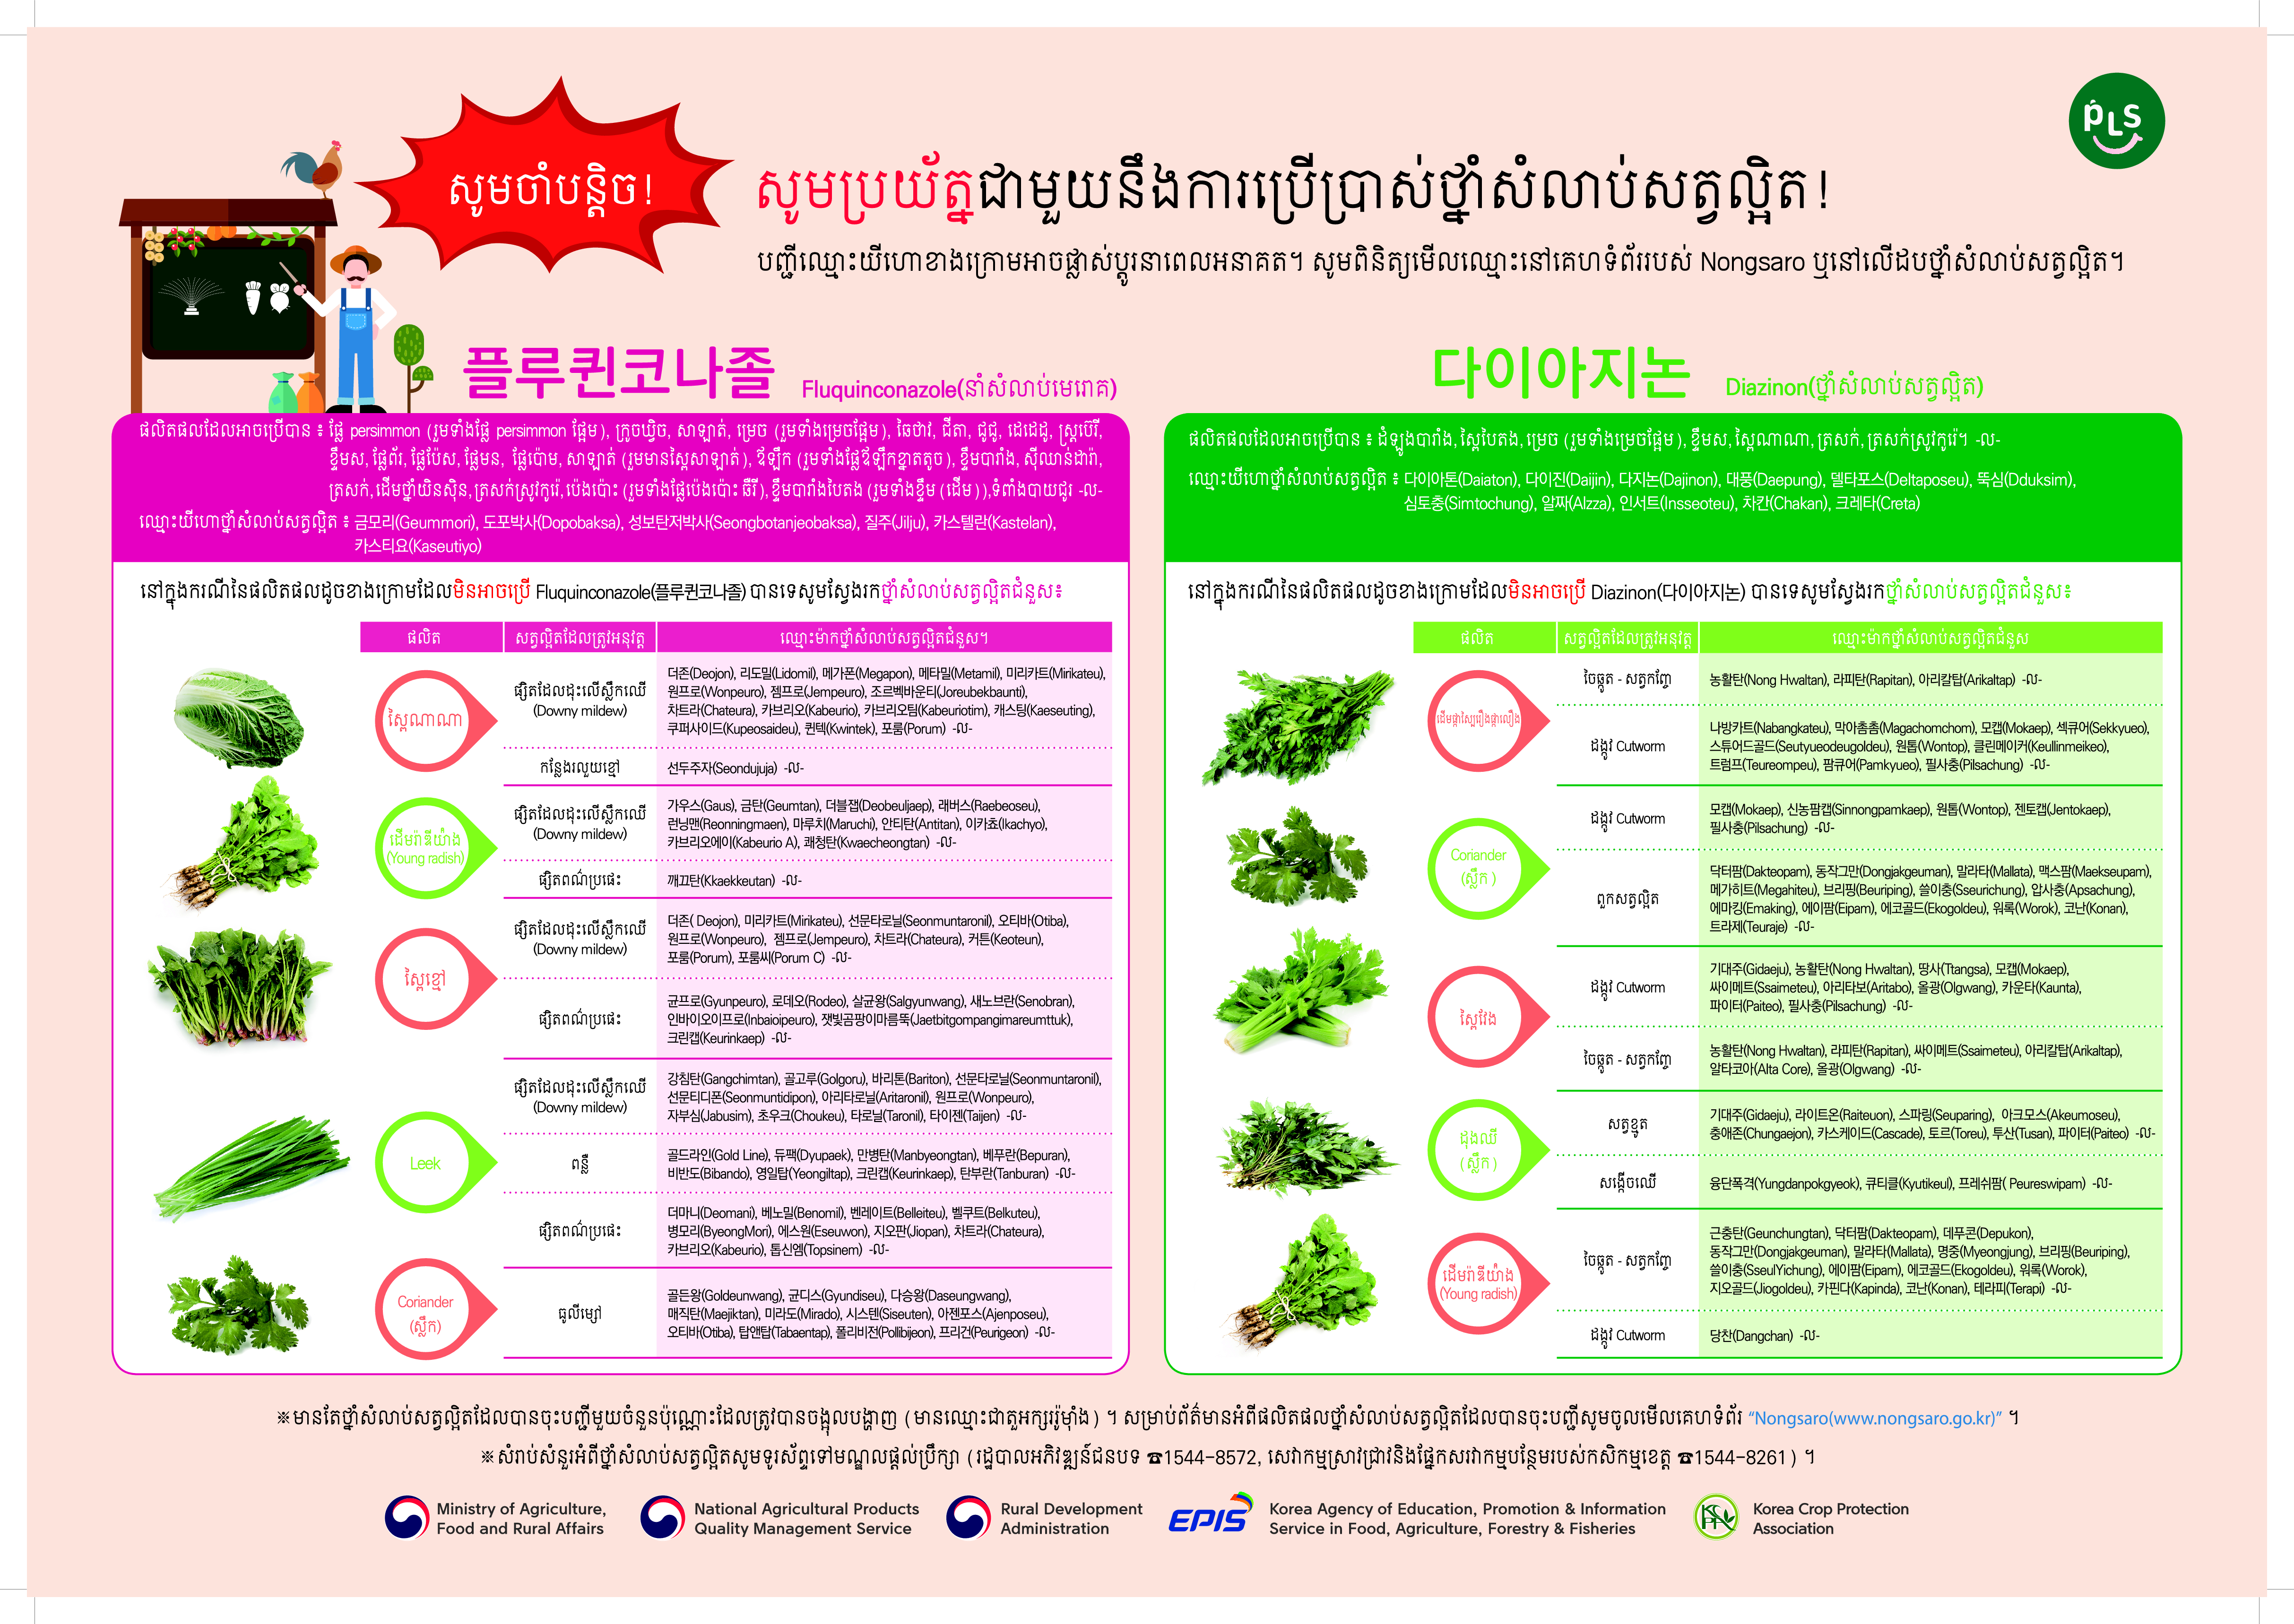 PLS 포스터_플루퀸코나졸, 다이아지논_캄보디아어 농약 사용에 더 조심해 주세요(캄보디아어)_1.png